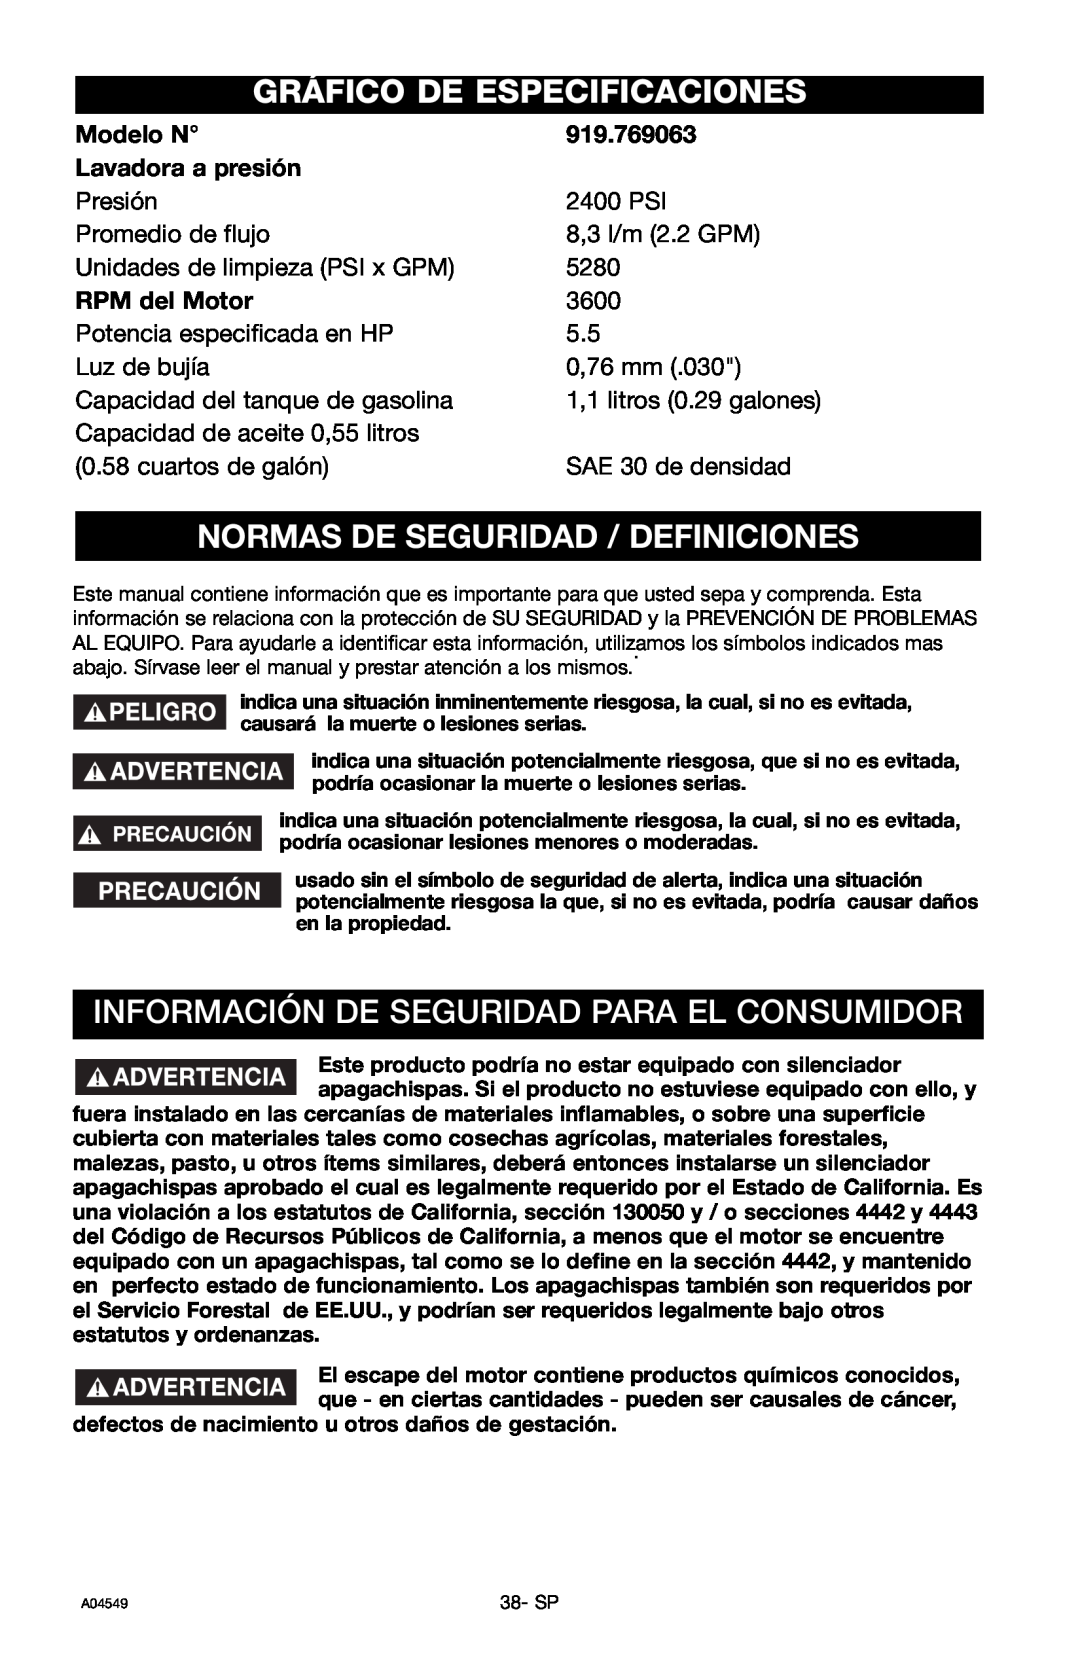 Craftsman 919.769063 owner manual Gráfico De Especificaciones, Normas De Seguridad / Definiciones 